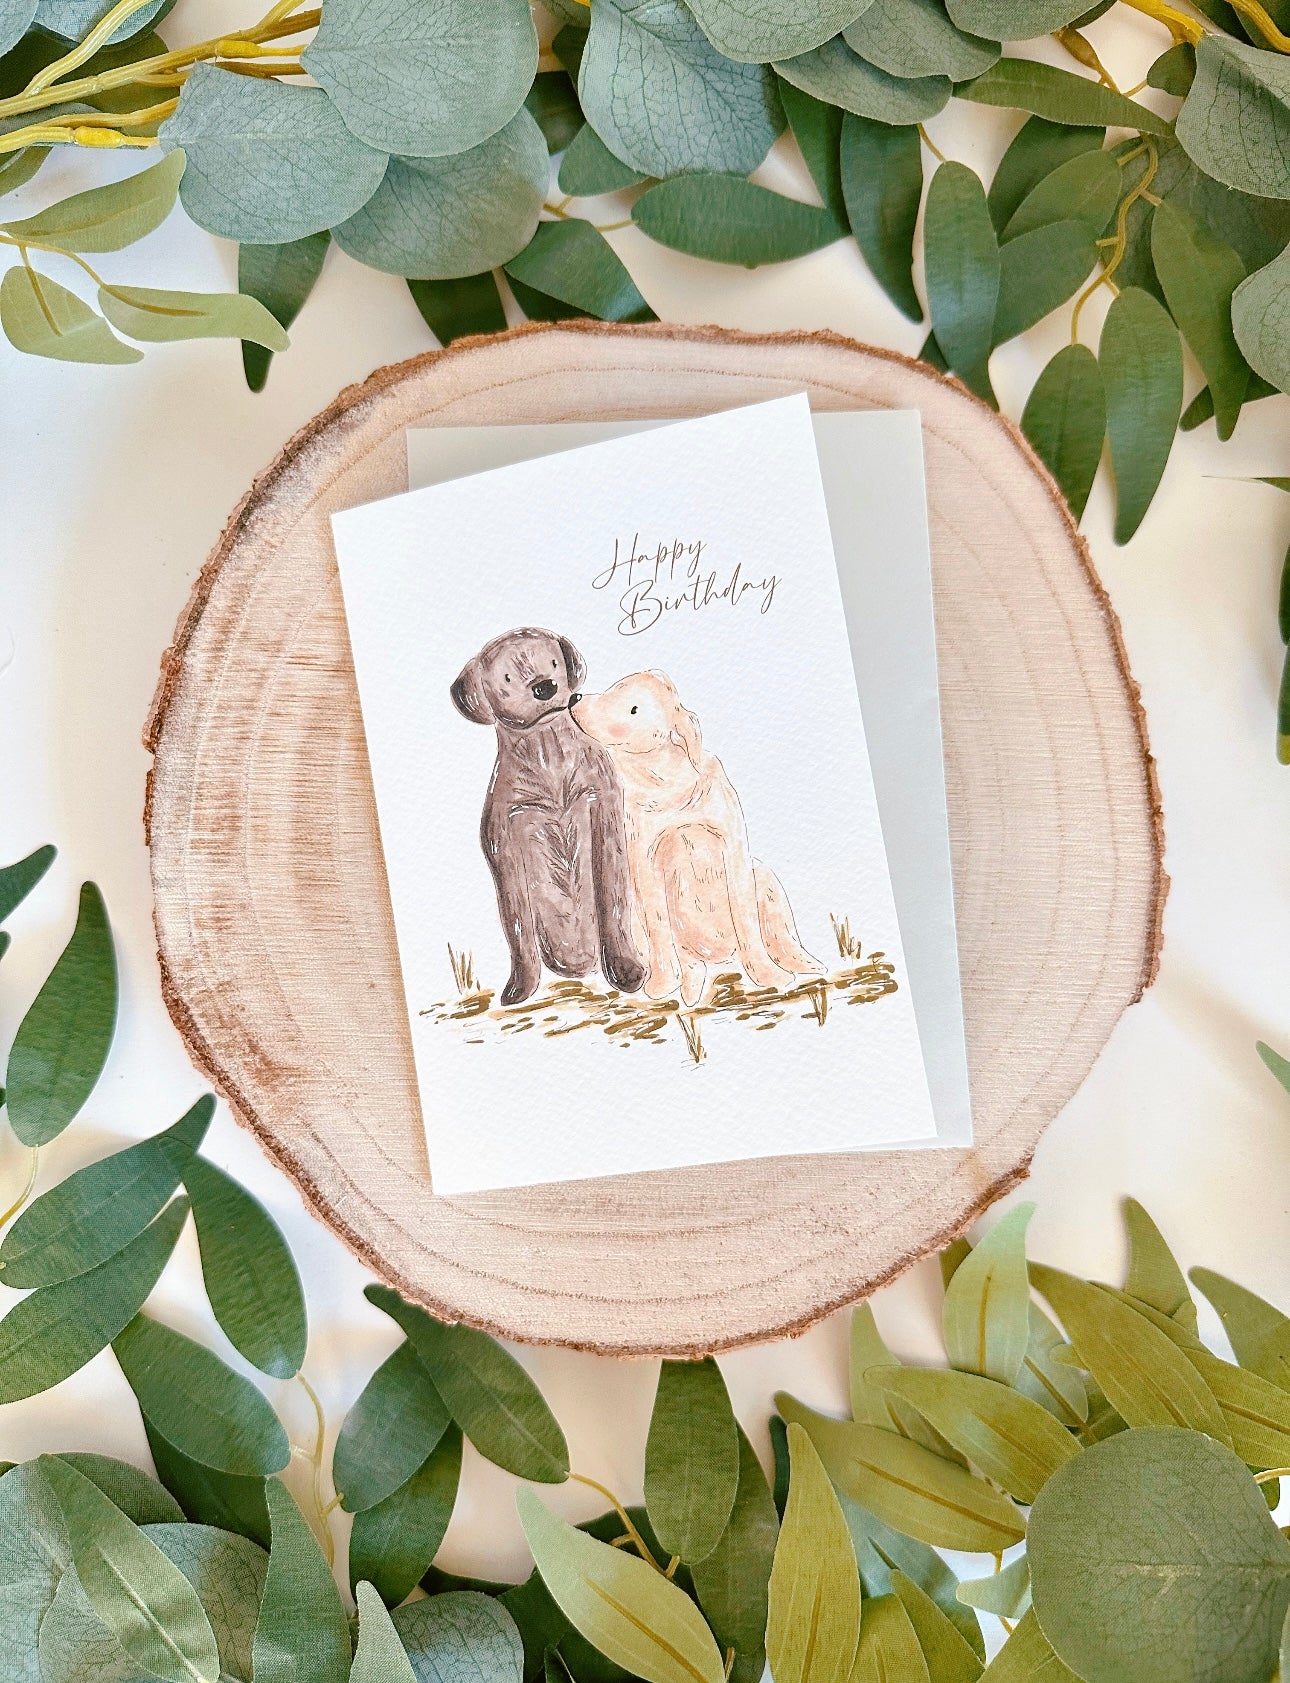 Labrador Birthday Card